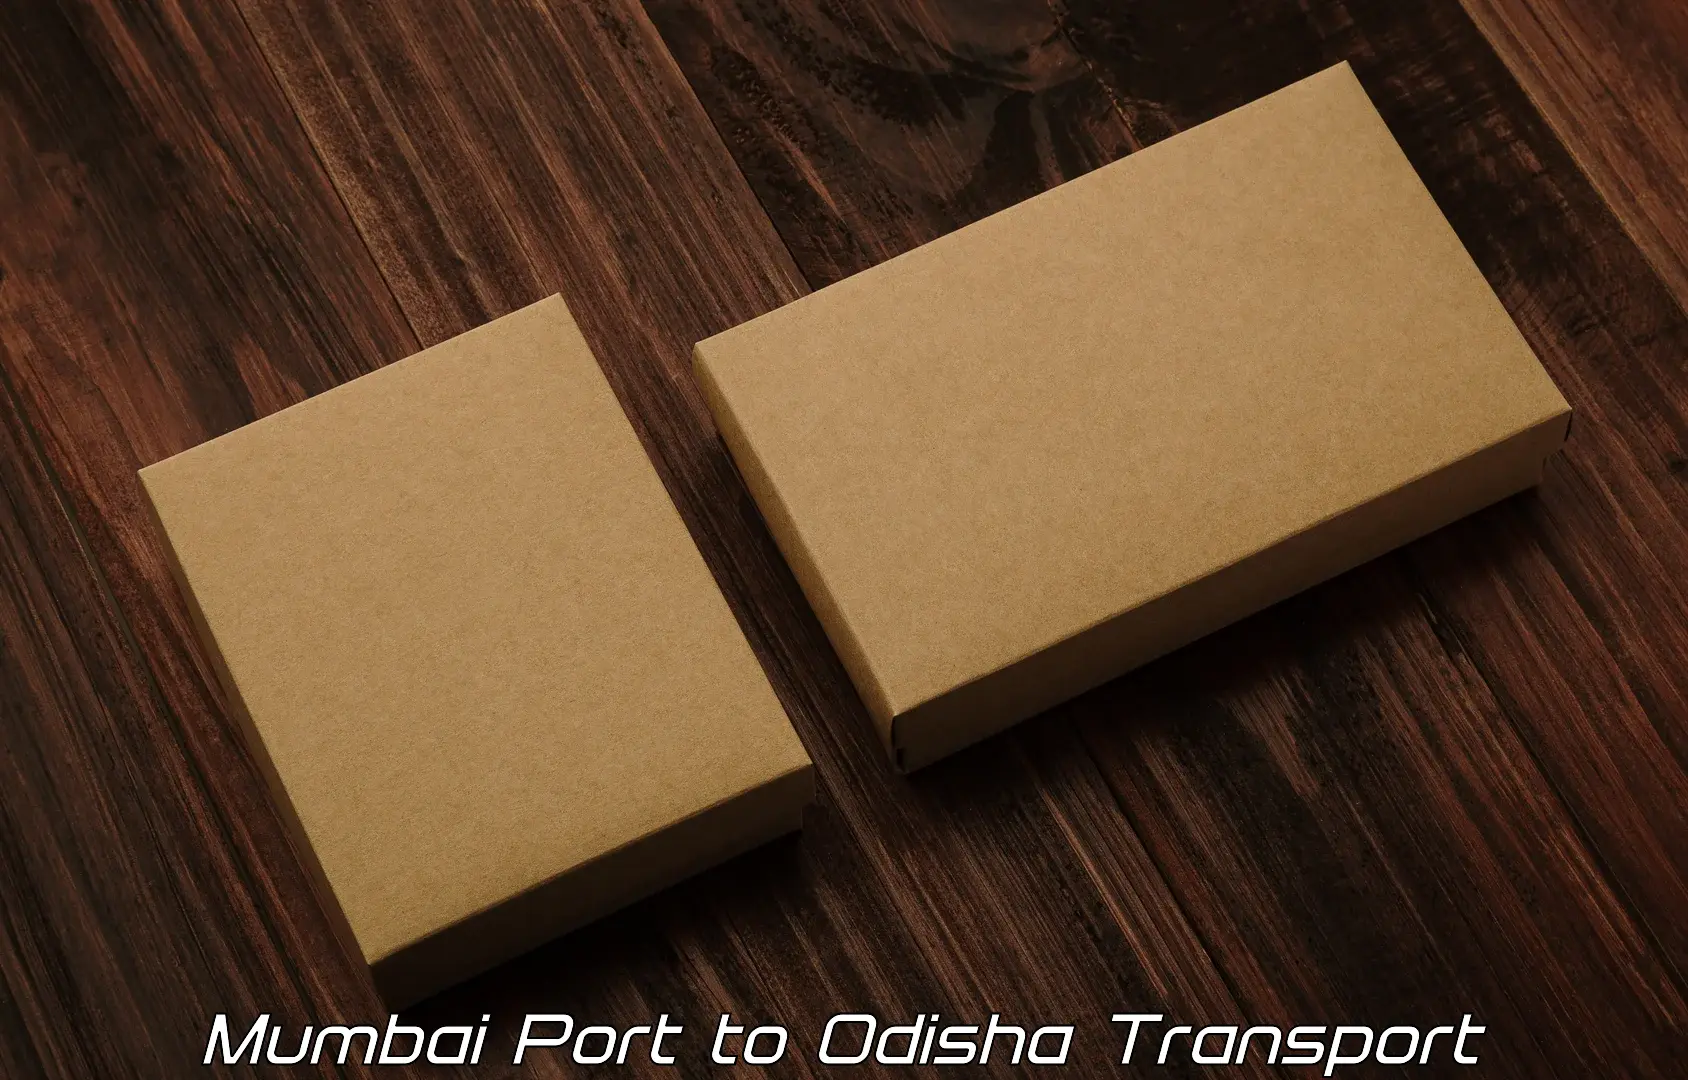 Air freight transport services Mumbai Port to Patnagarh